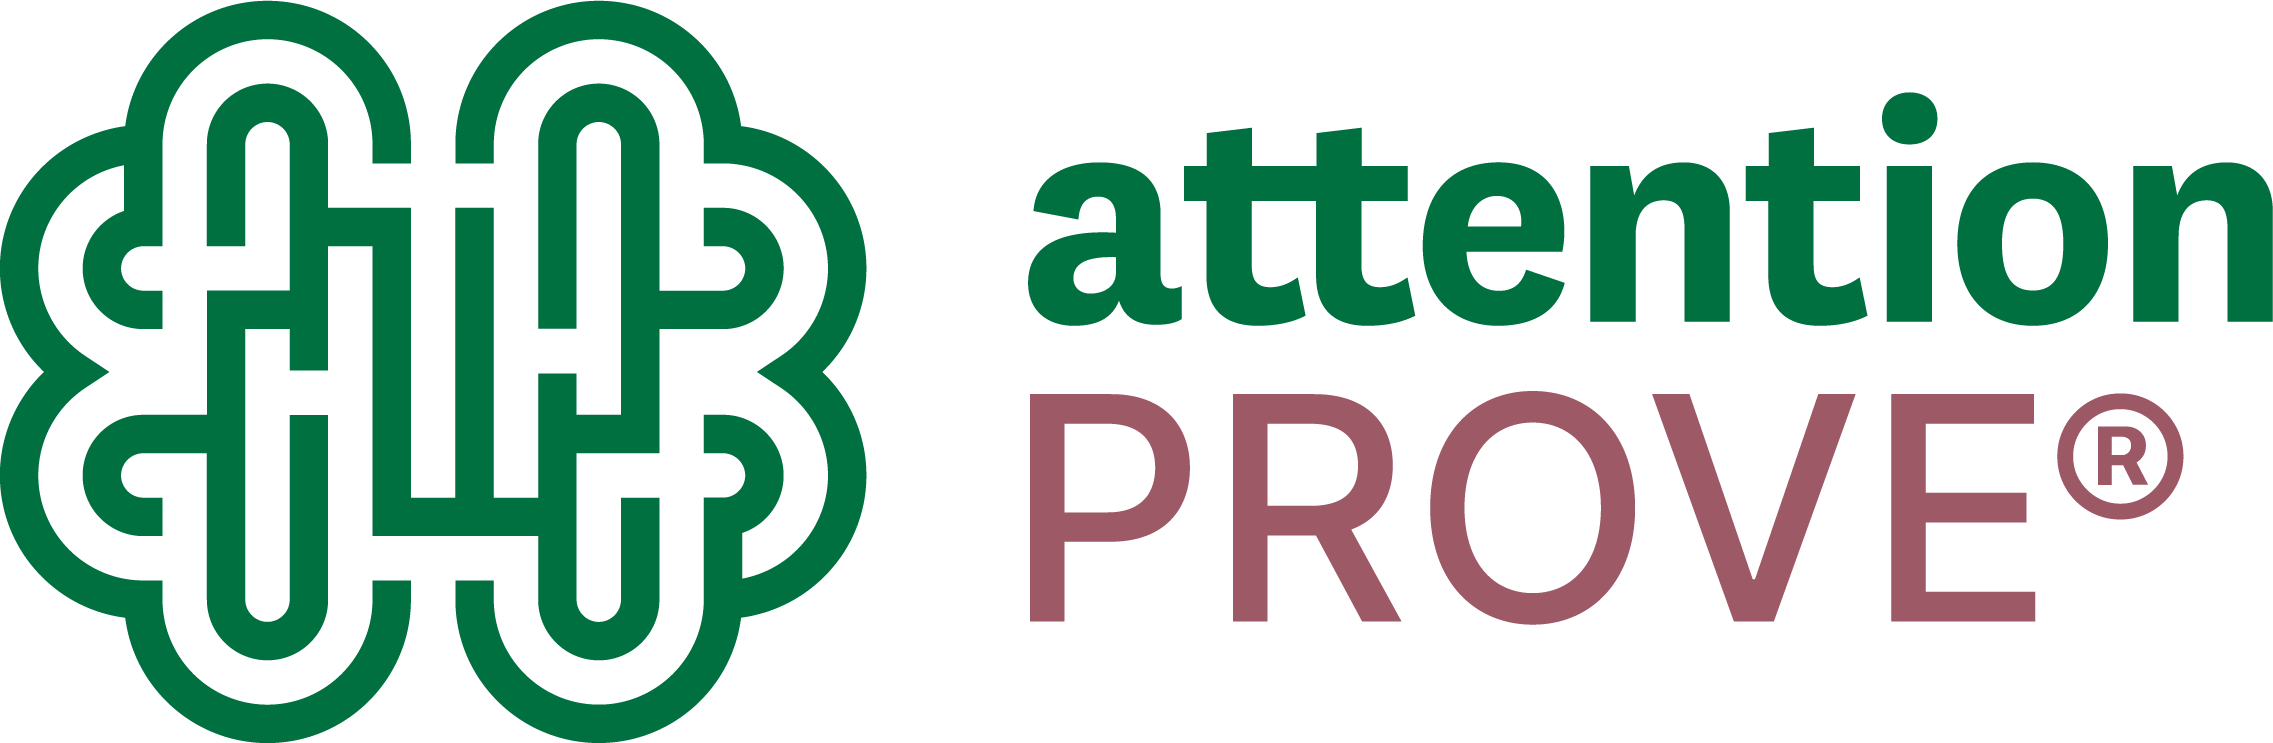 attentionTRACE logo